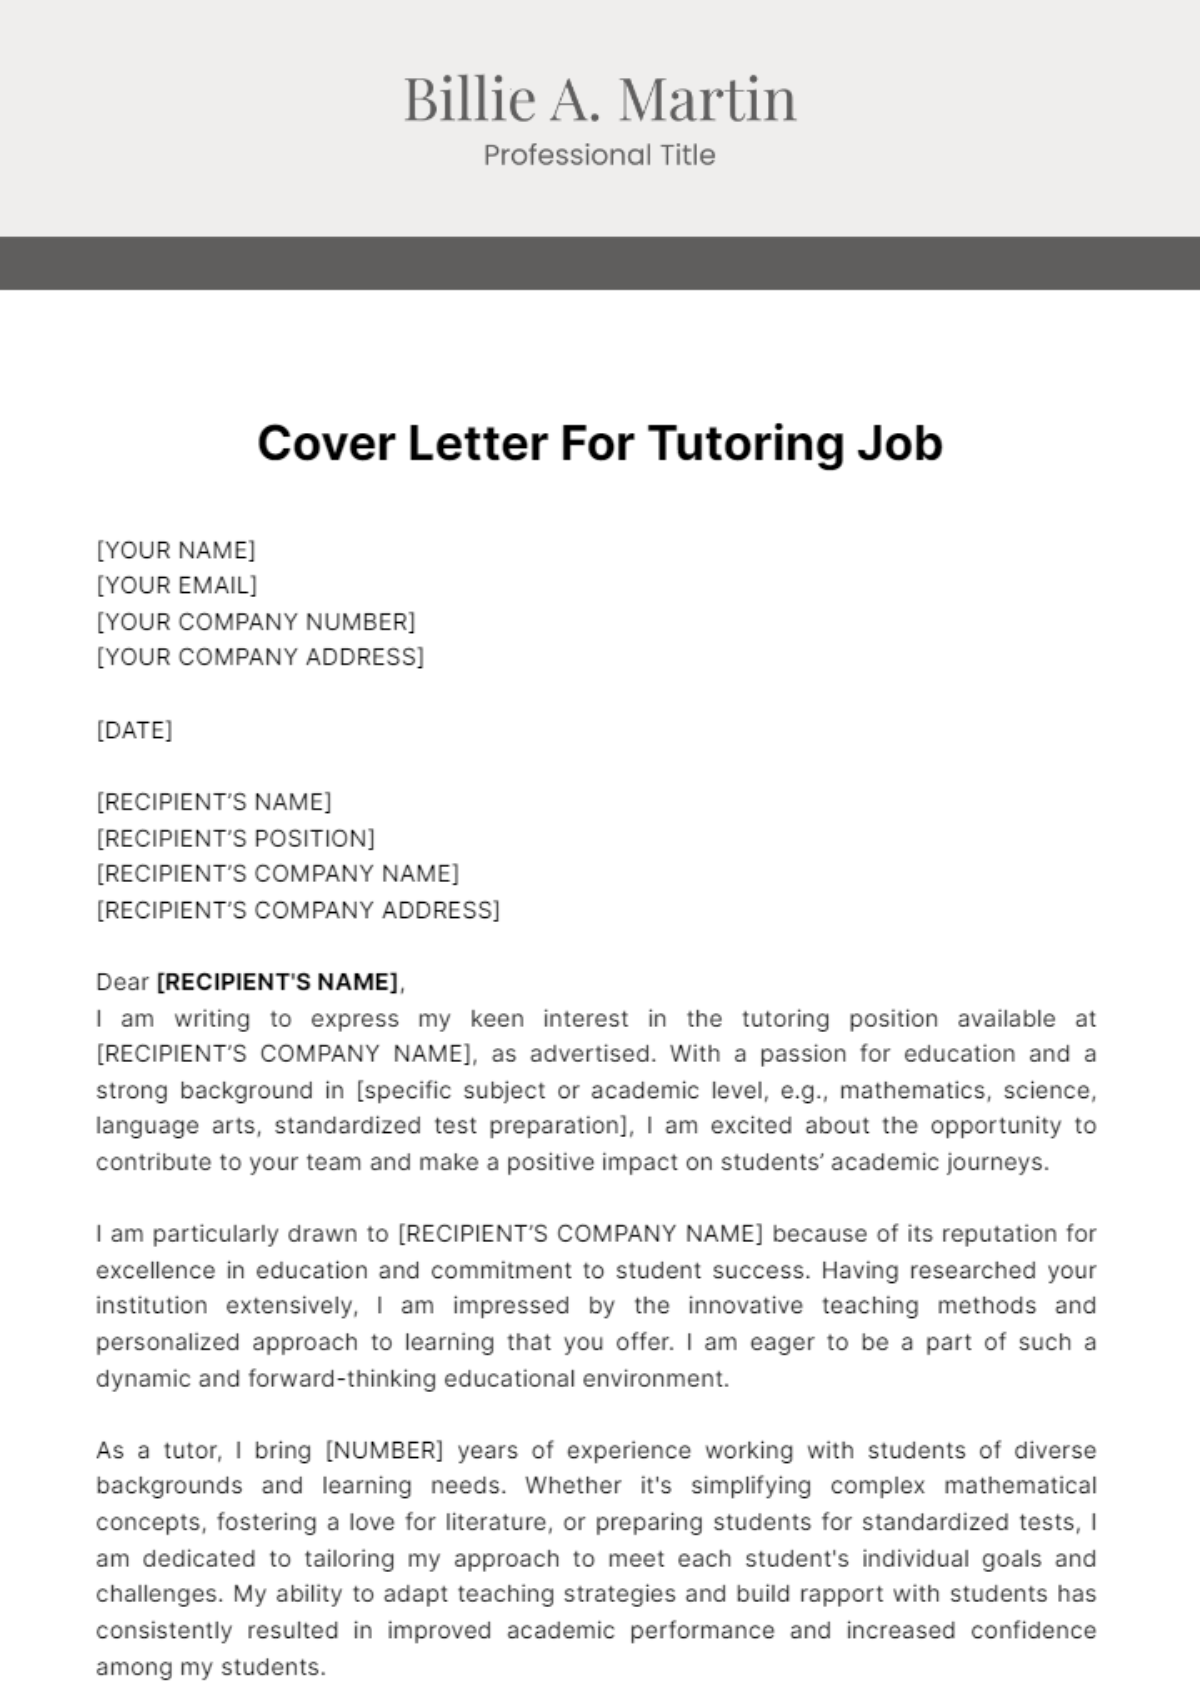 Cover Letter For Tutoring Job Template